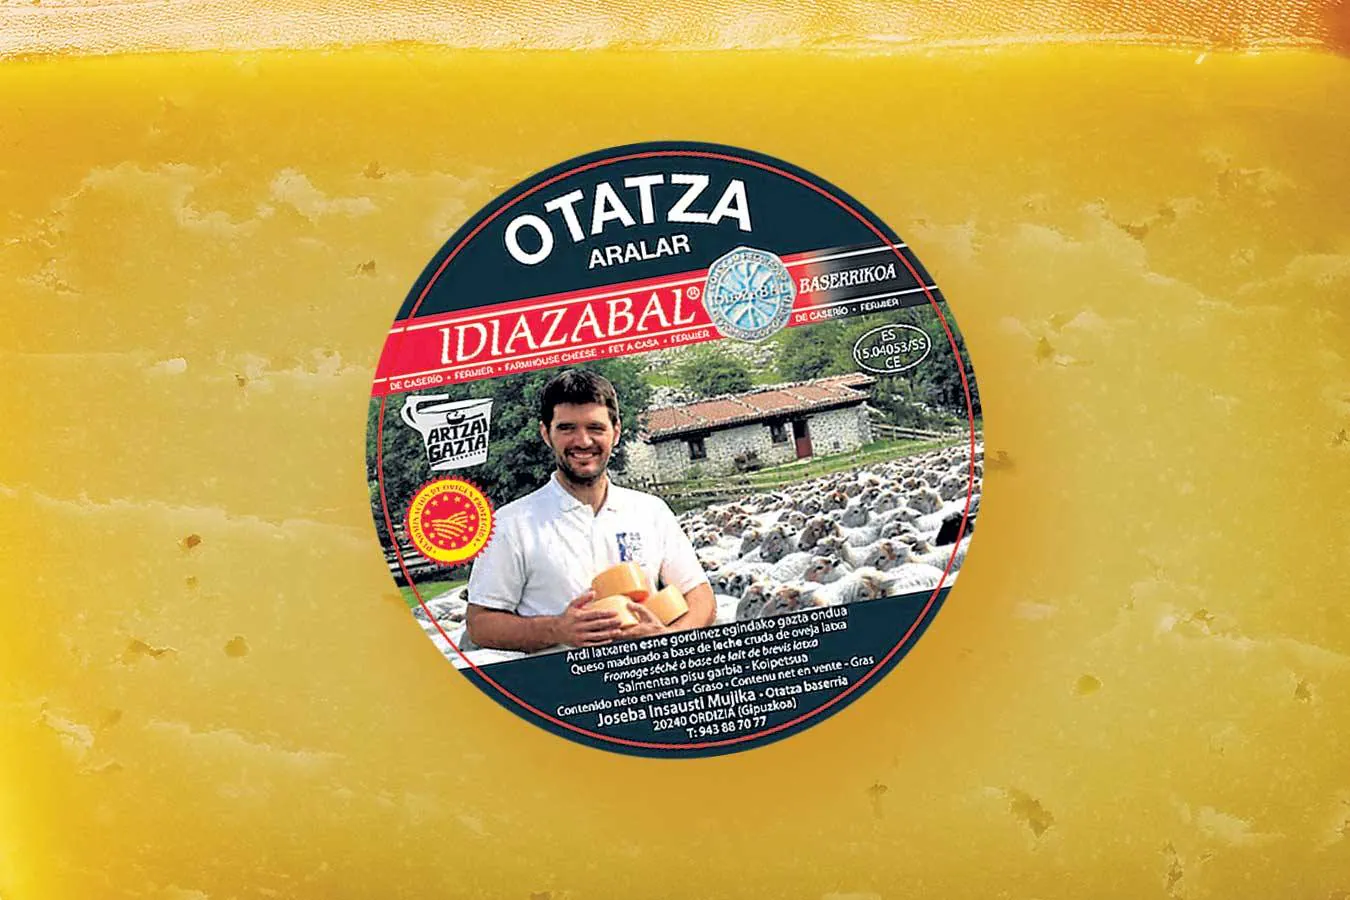 OTATZA | Por qué se han llevado un bronce y una plata se puede comprobar visitando la quesería, en Ordizia, y ver dónde pastan las ovejas en verano, en las preciosas campas del Parque Natural de Aralar. Dirección Otatza Baserria. Ordizia (Gipuzkoa).